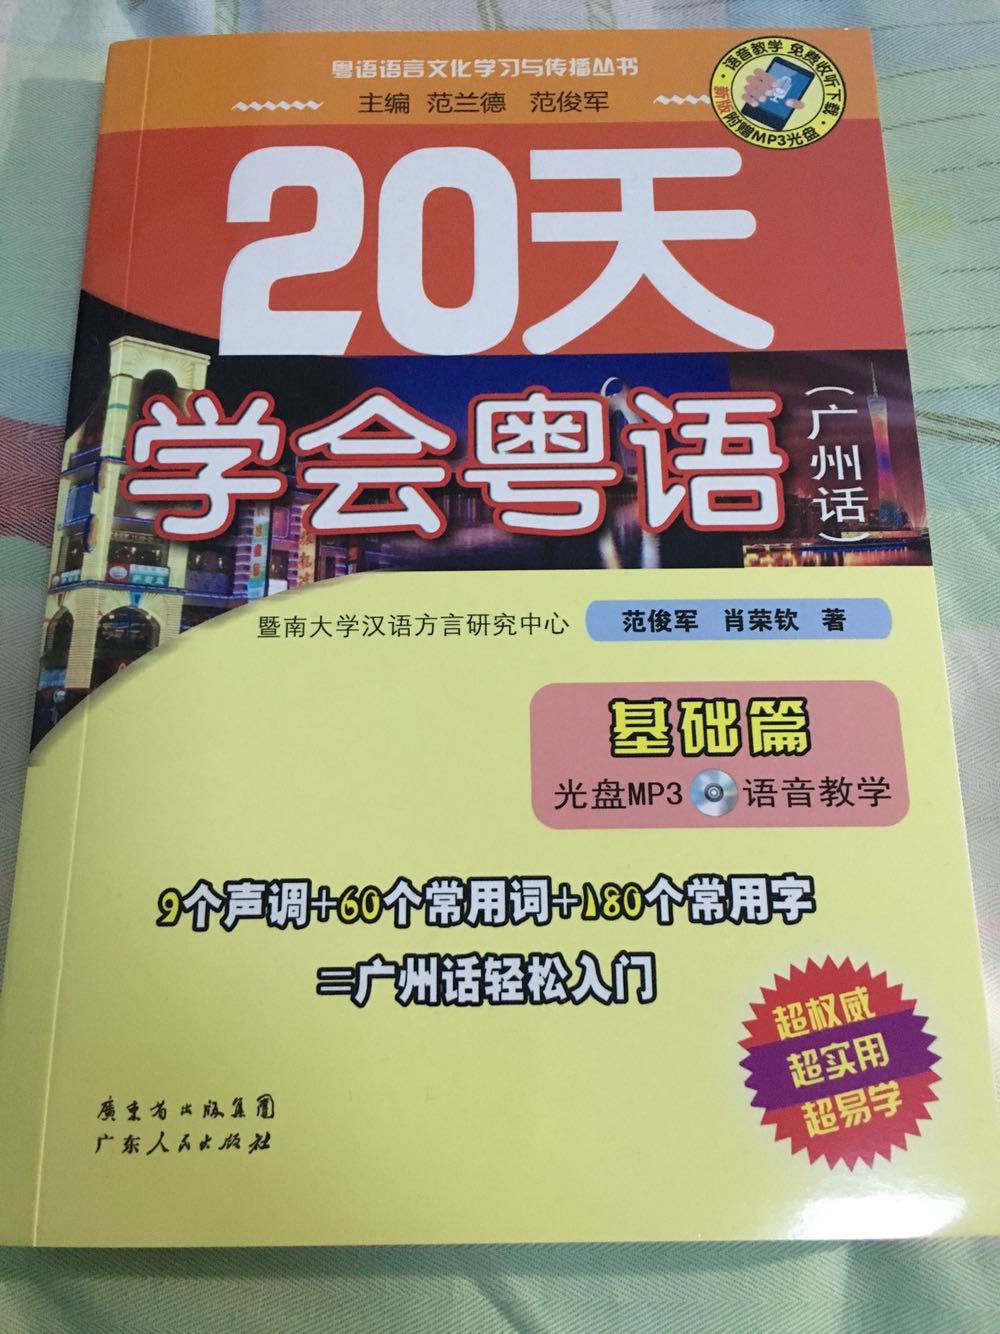 没事想学习学习粤语，买了这本书看看，讲的很基础，还不错